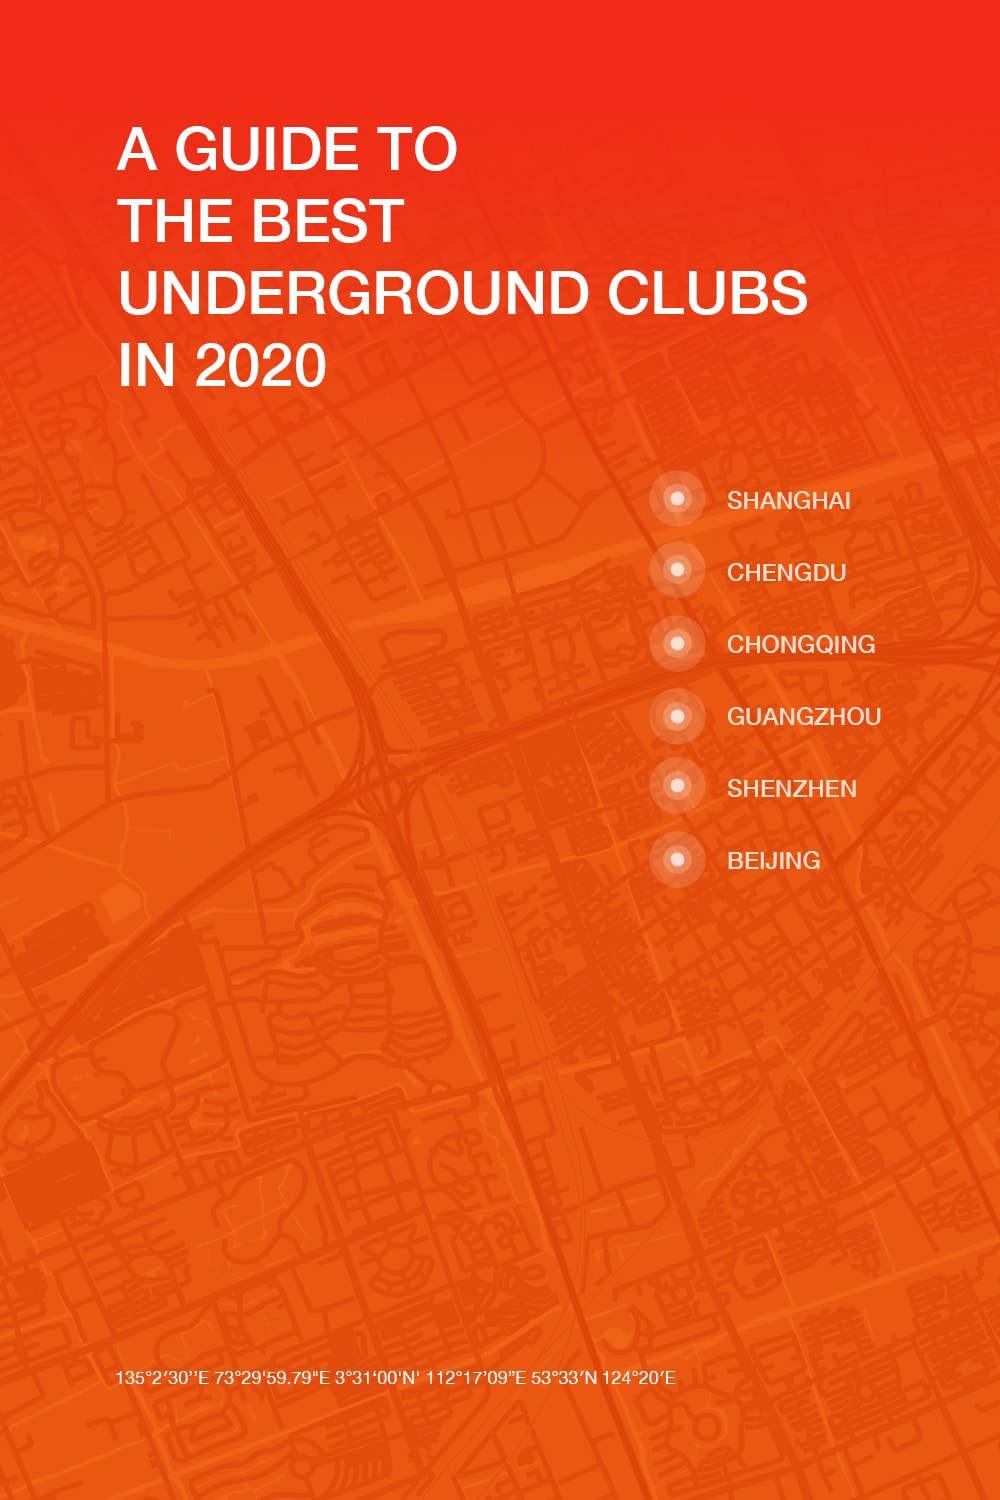 中国 6 城音乐人推荐的 15 间地下音乐俱乐部 | 2020 地下音乐俱乐部指南